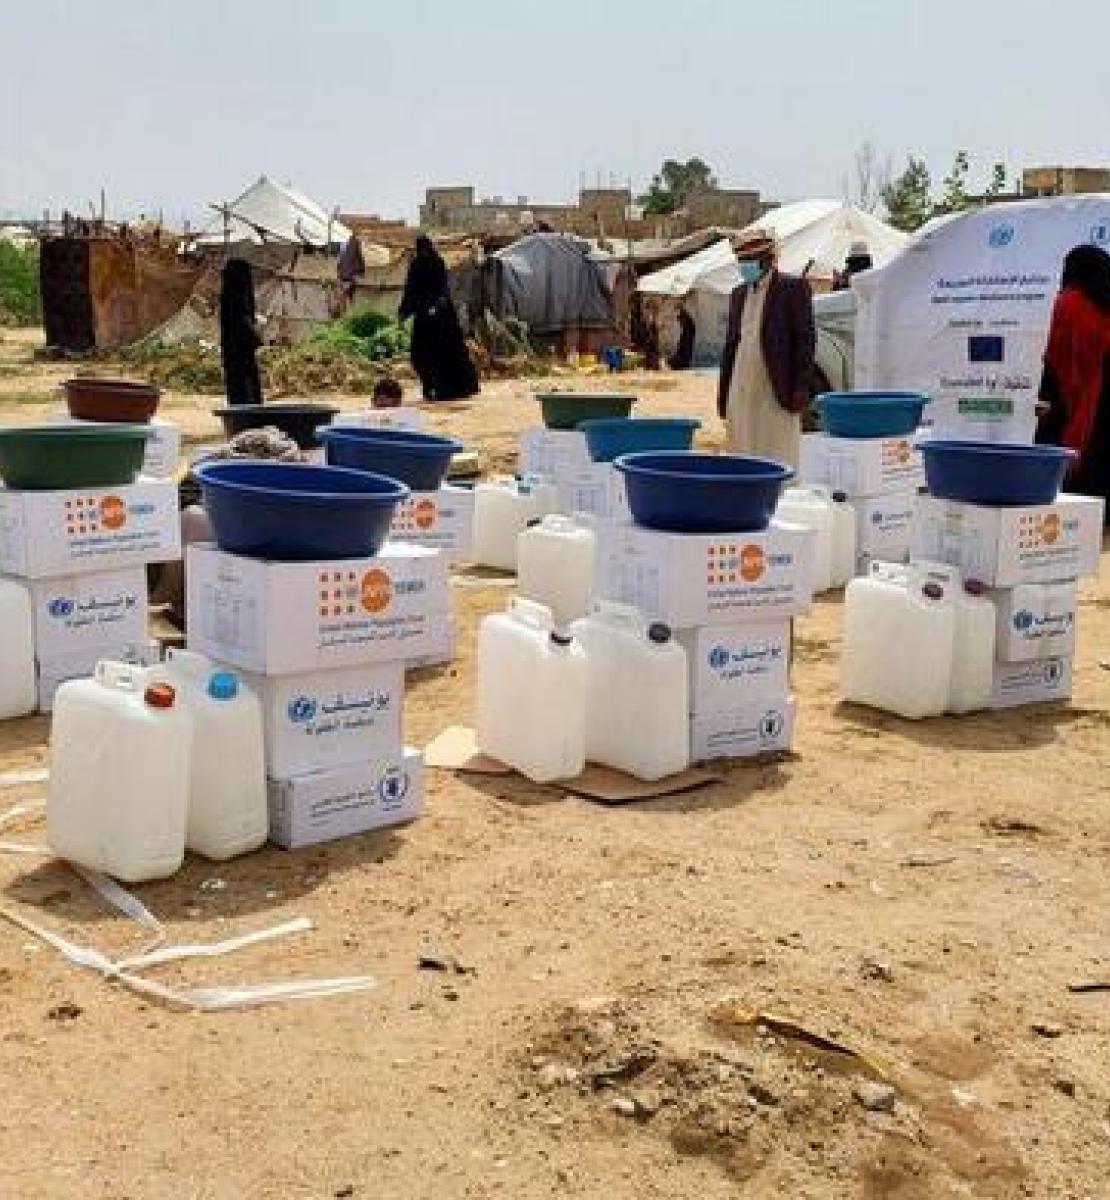 توزيع مجموعات تحتوي على مواد أساسية للصحة والنظافة وملابس ووجبات جاهزة للأكل لدعم جهود الإغاثة الطارئة من الفيضانات في محافظة الجوف، اليمن.